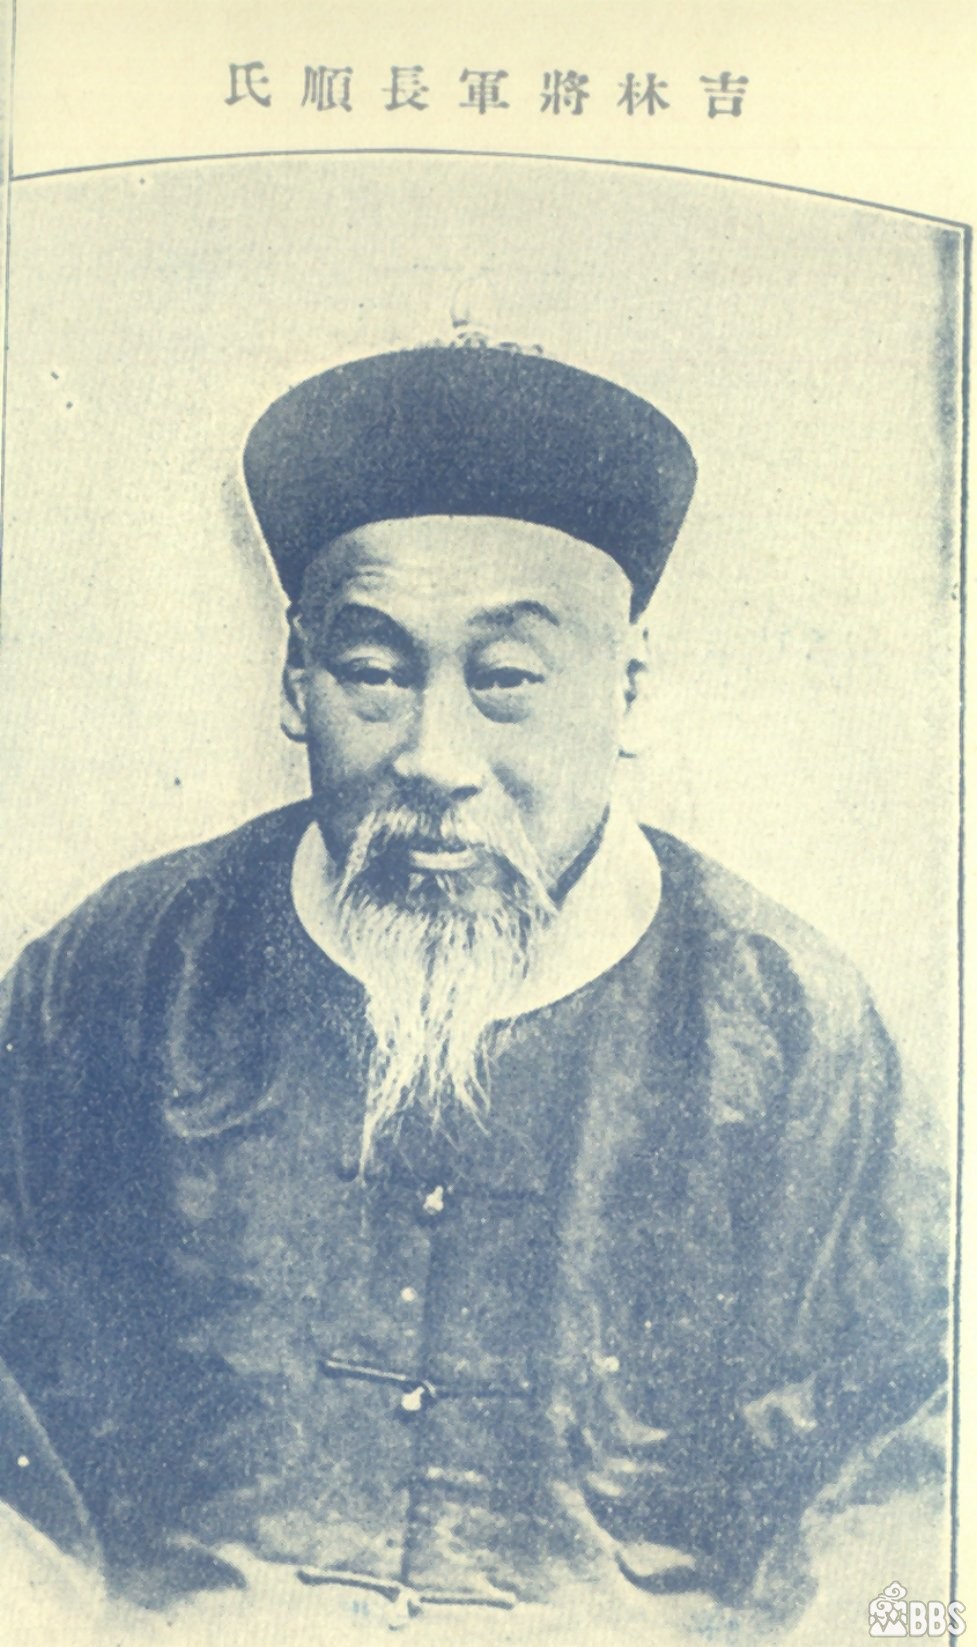 1889年11月20日 松花江水师营建立